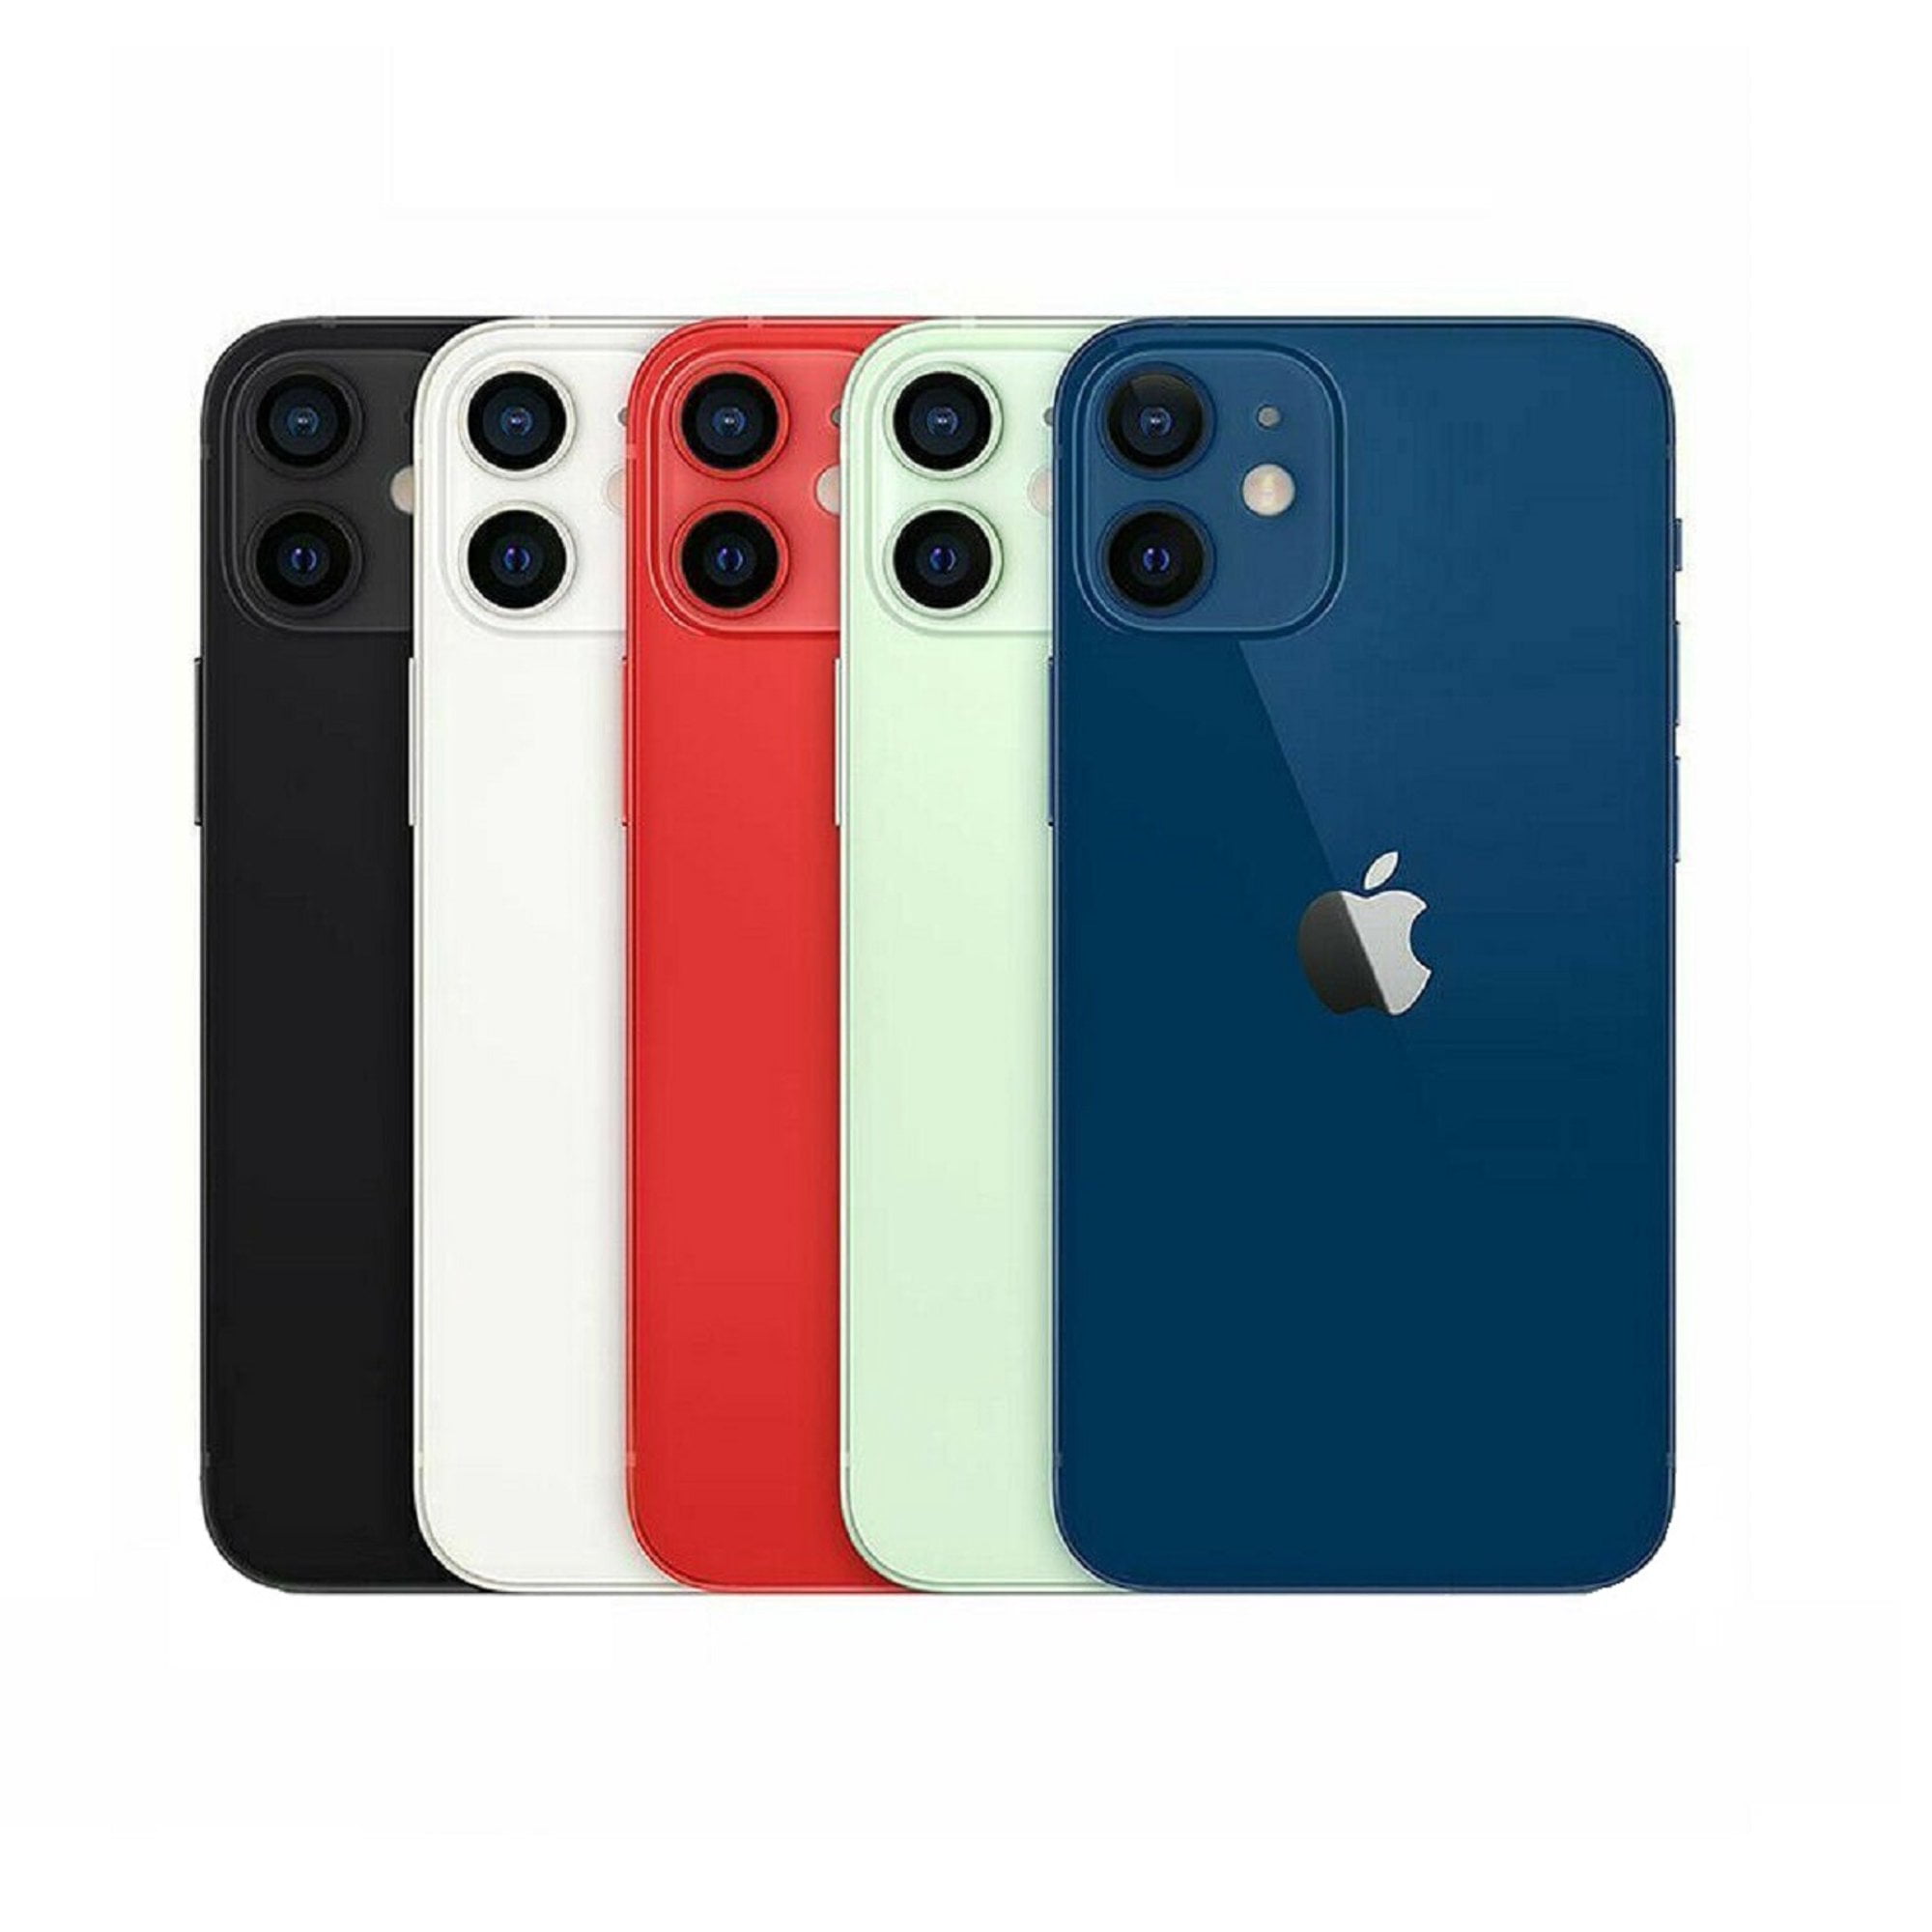 Apple iPhone 12 Mini 256GB Blue (Unlocked) Refurbished - Walmart.com